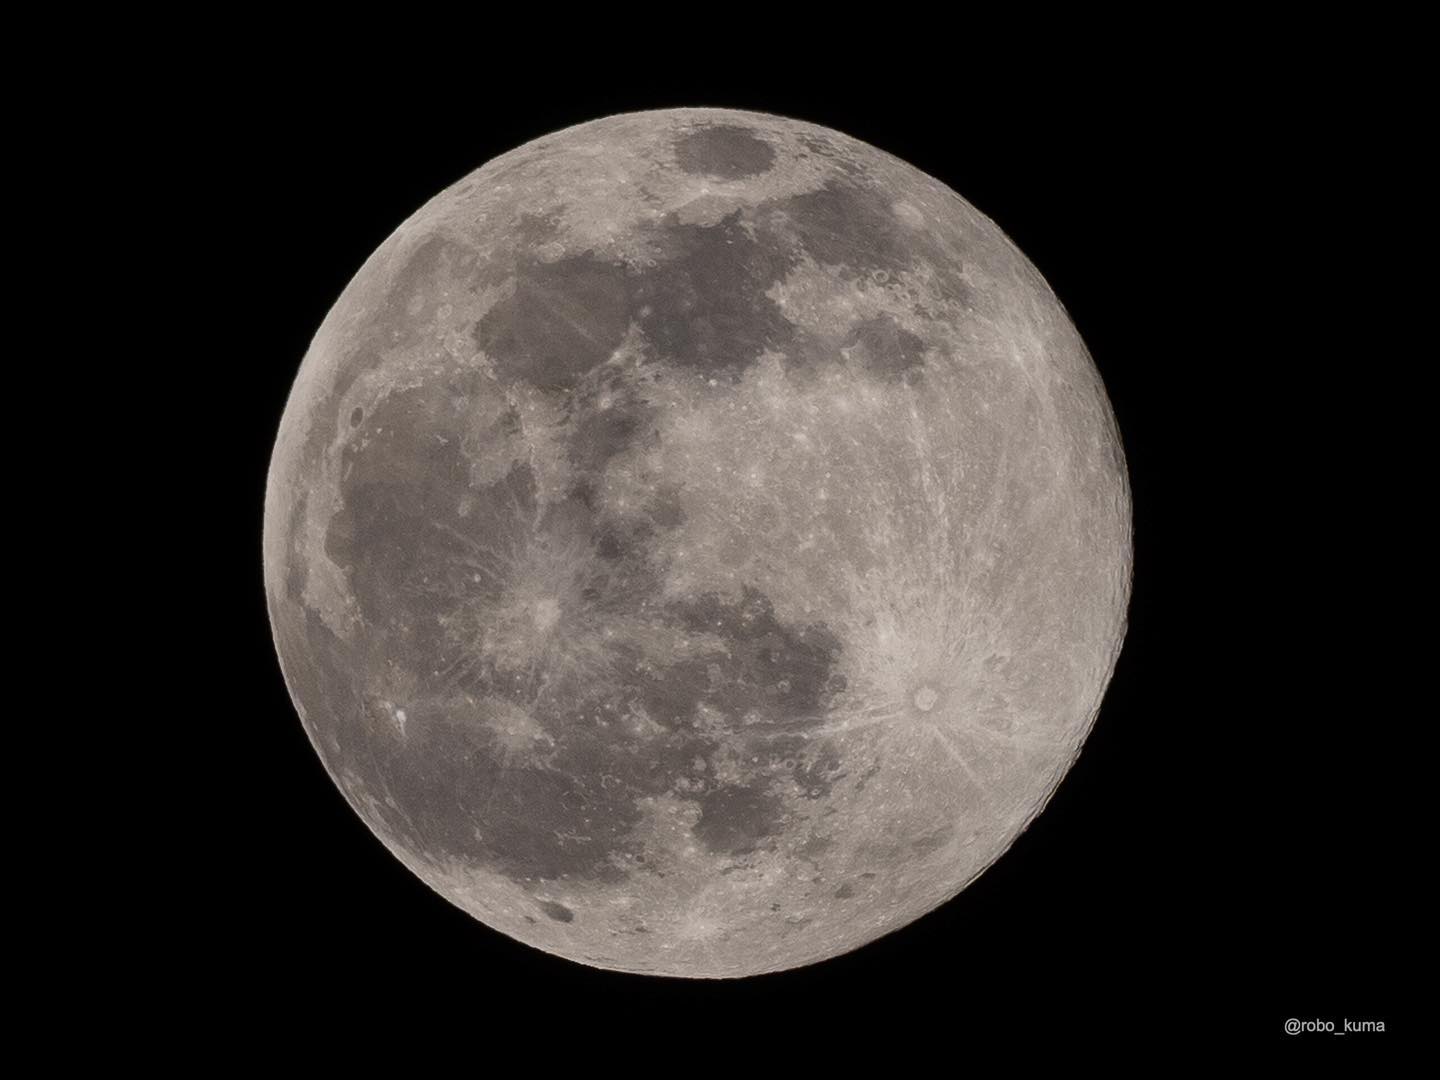 3月の満月「ワームムーン」。晴れてクッキリ見える。(OLYMPUS OM-D E-M1X + M.ZUIKO DIGITAL ED 300mm F4.0 IS PRO トリミング)